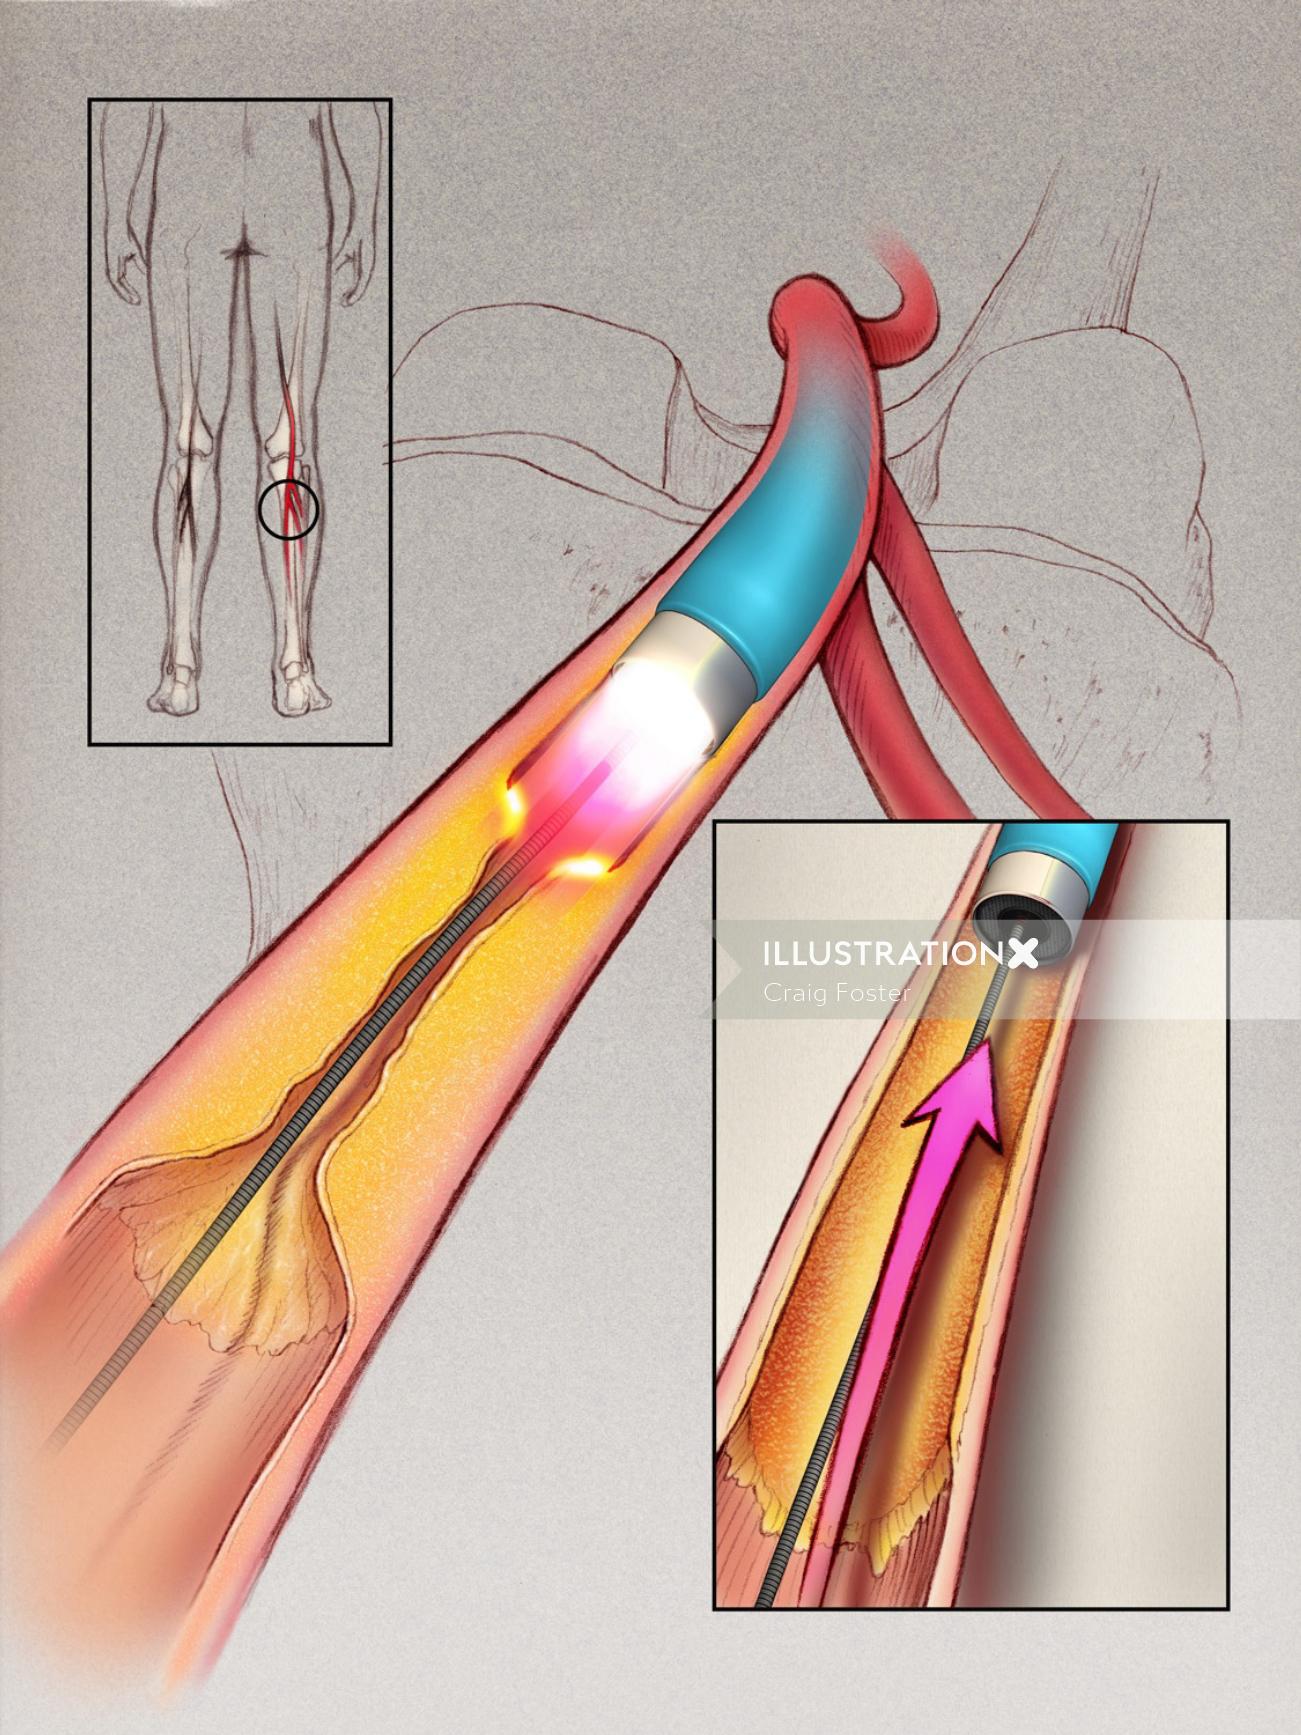 脚のアテローム性動脈硬化症のイラスト